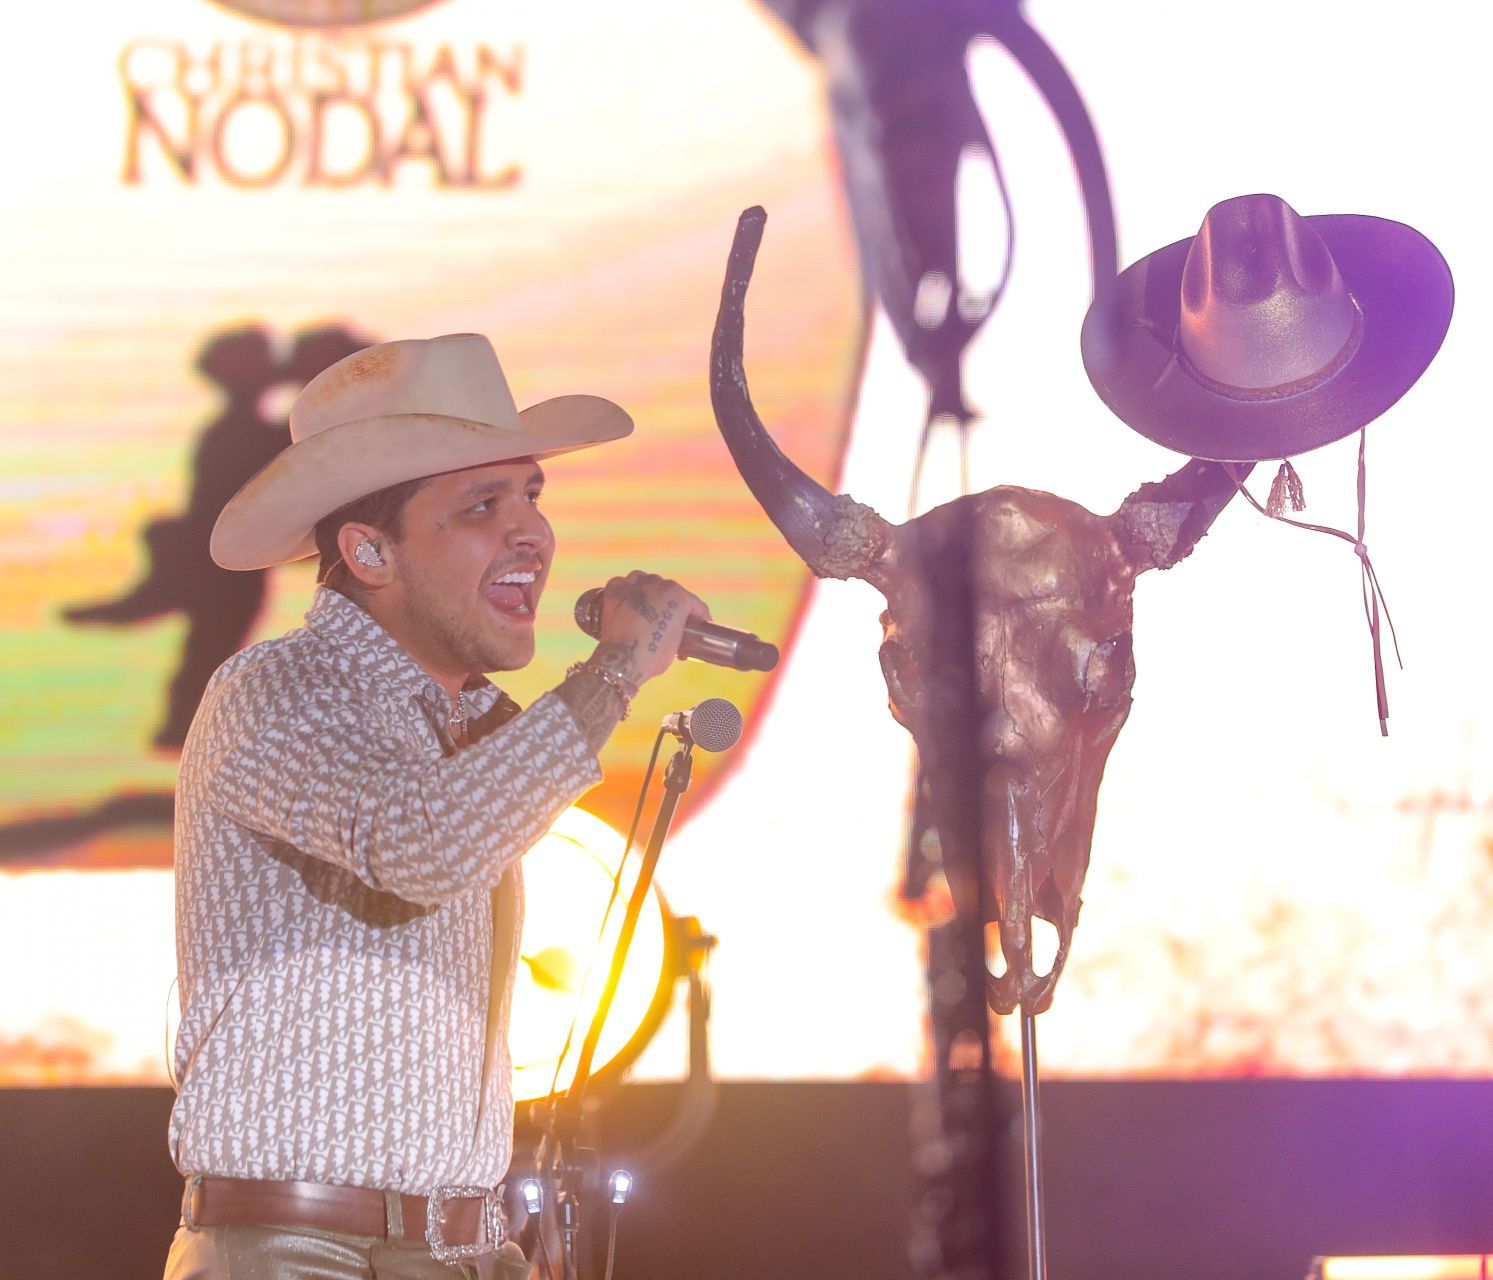 Nodal se presentó este fin de semana en Bolivia (Foto: Cuartoscuro)